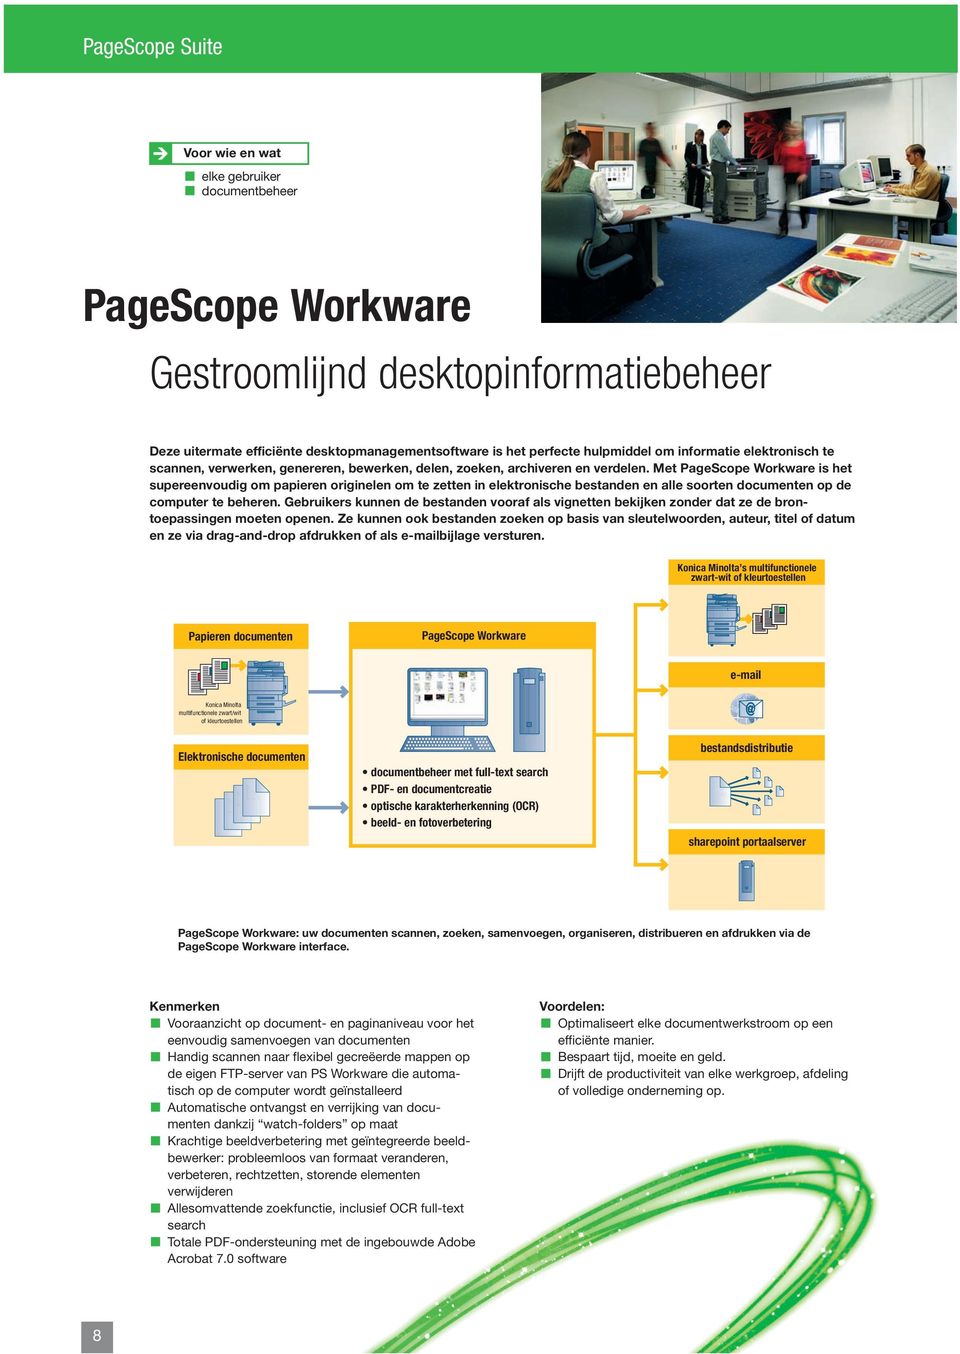 Met PageScope Workware is het supereenvoudig om papieren originelen om te zetten in elektronische bestanden en alle soorten documenten op de computer te beheren.